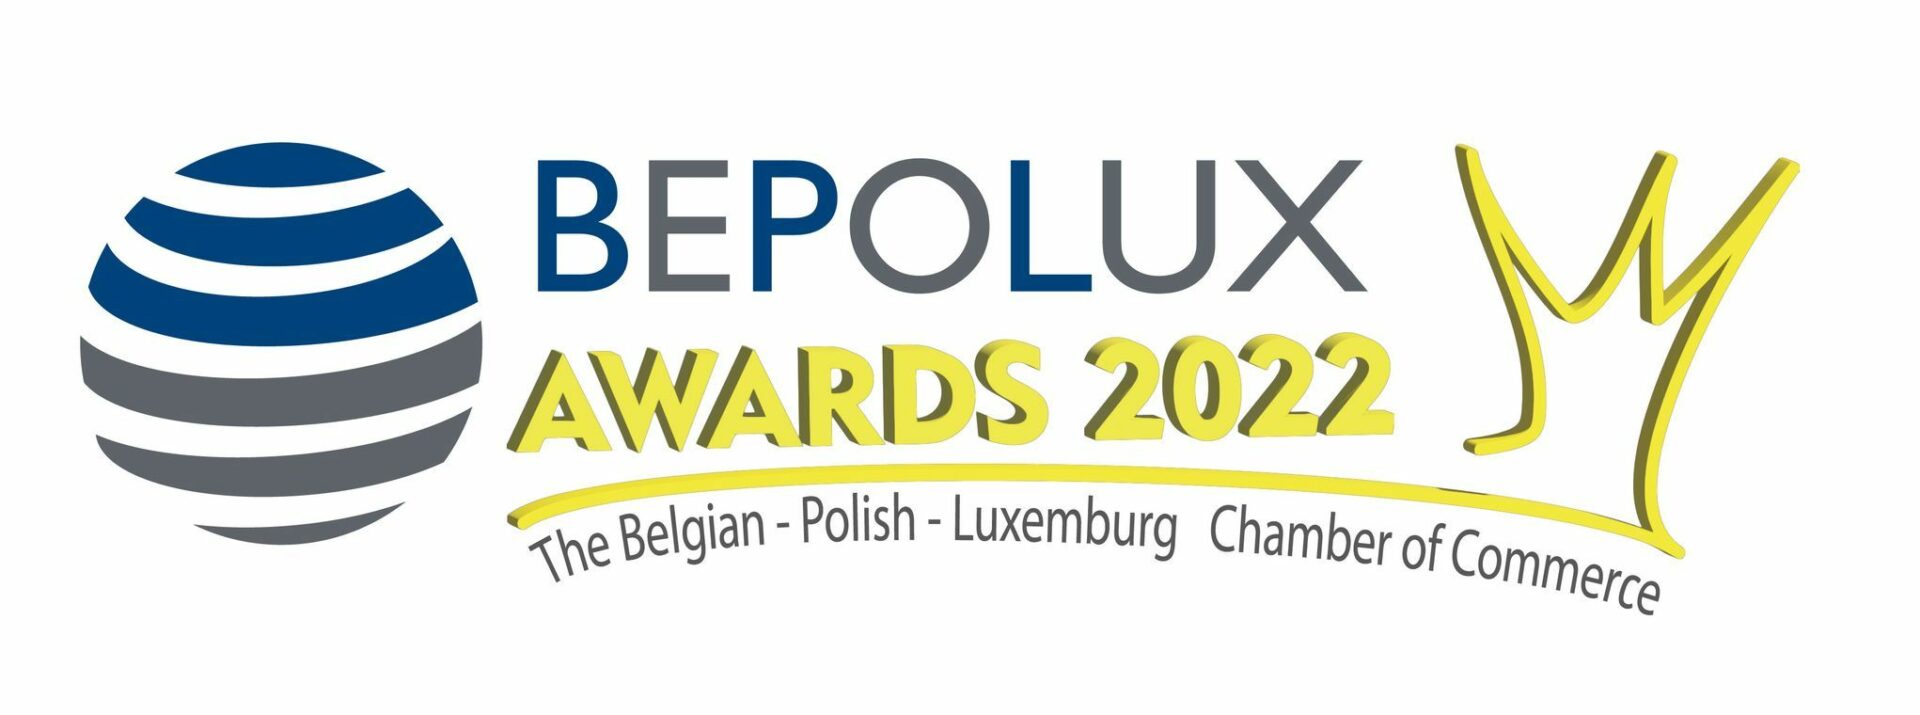 Bepolux awards